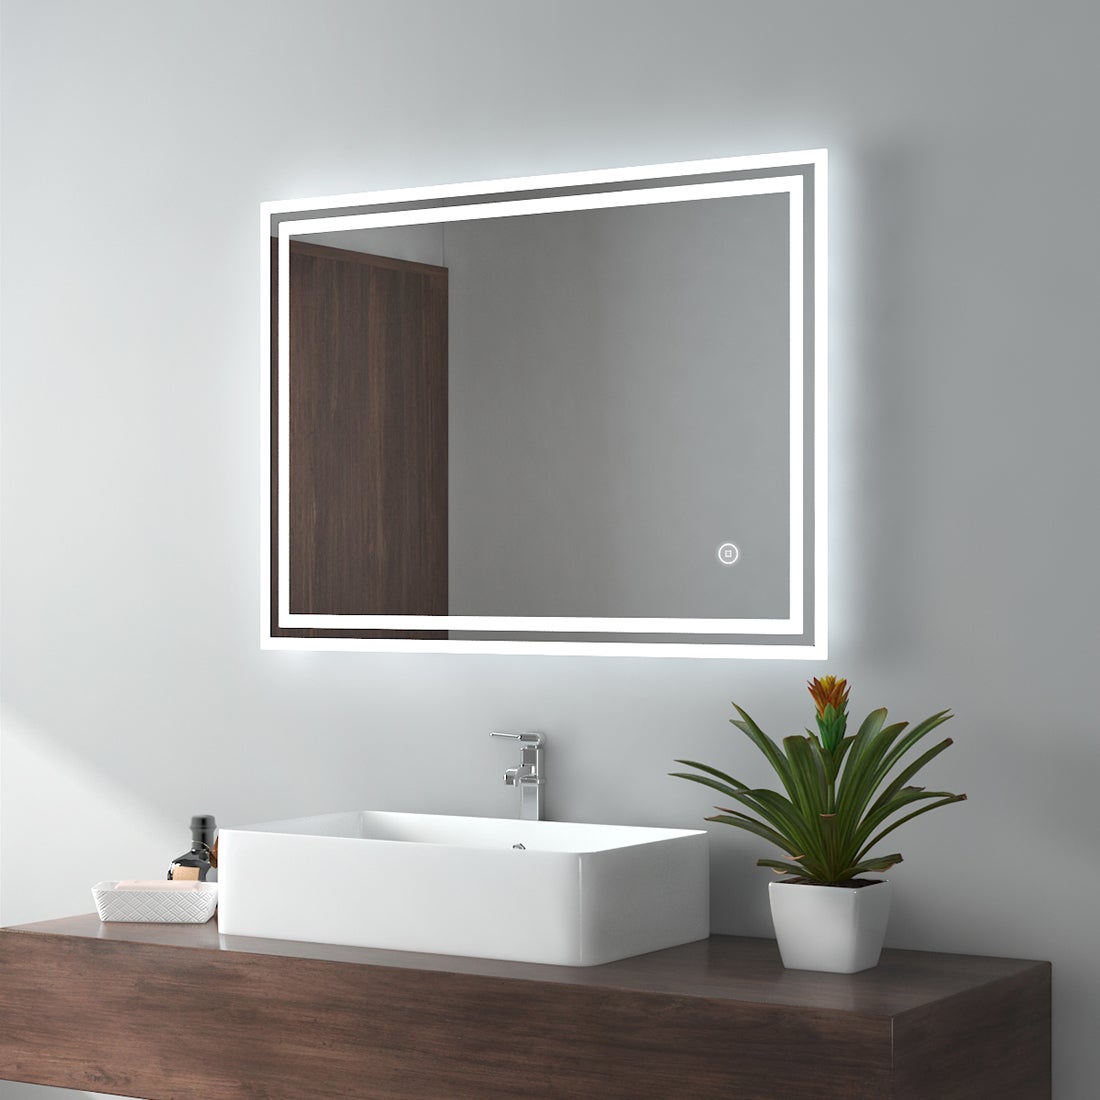 EMKE Badspiegel LED IP44 Wasserdicht Wandspiegel, 80x60cm, Kaltweißes/Neutral/Warmweißes Licht Dimmbar, Touchschalter, Beschlagfrei